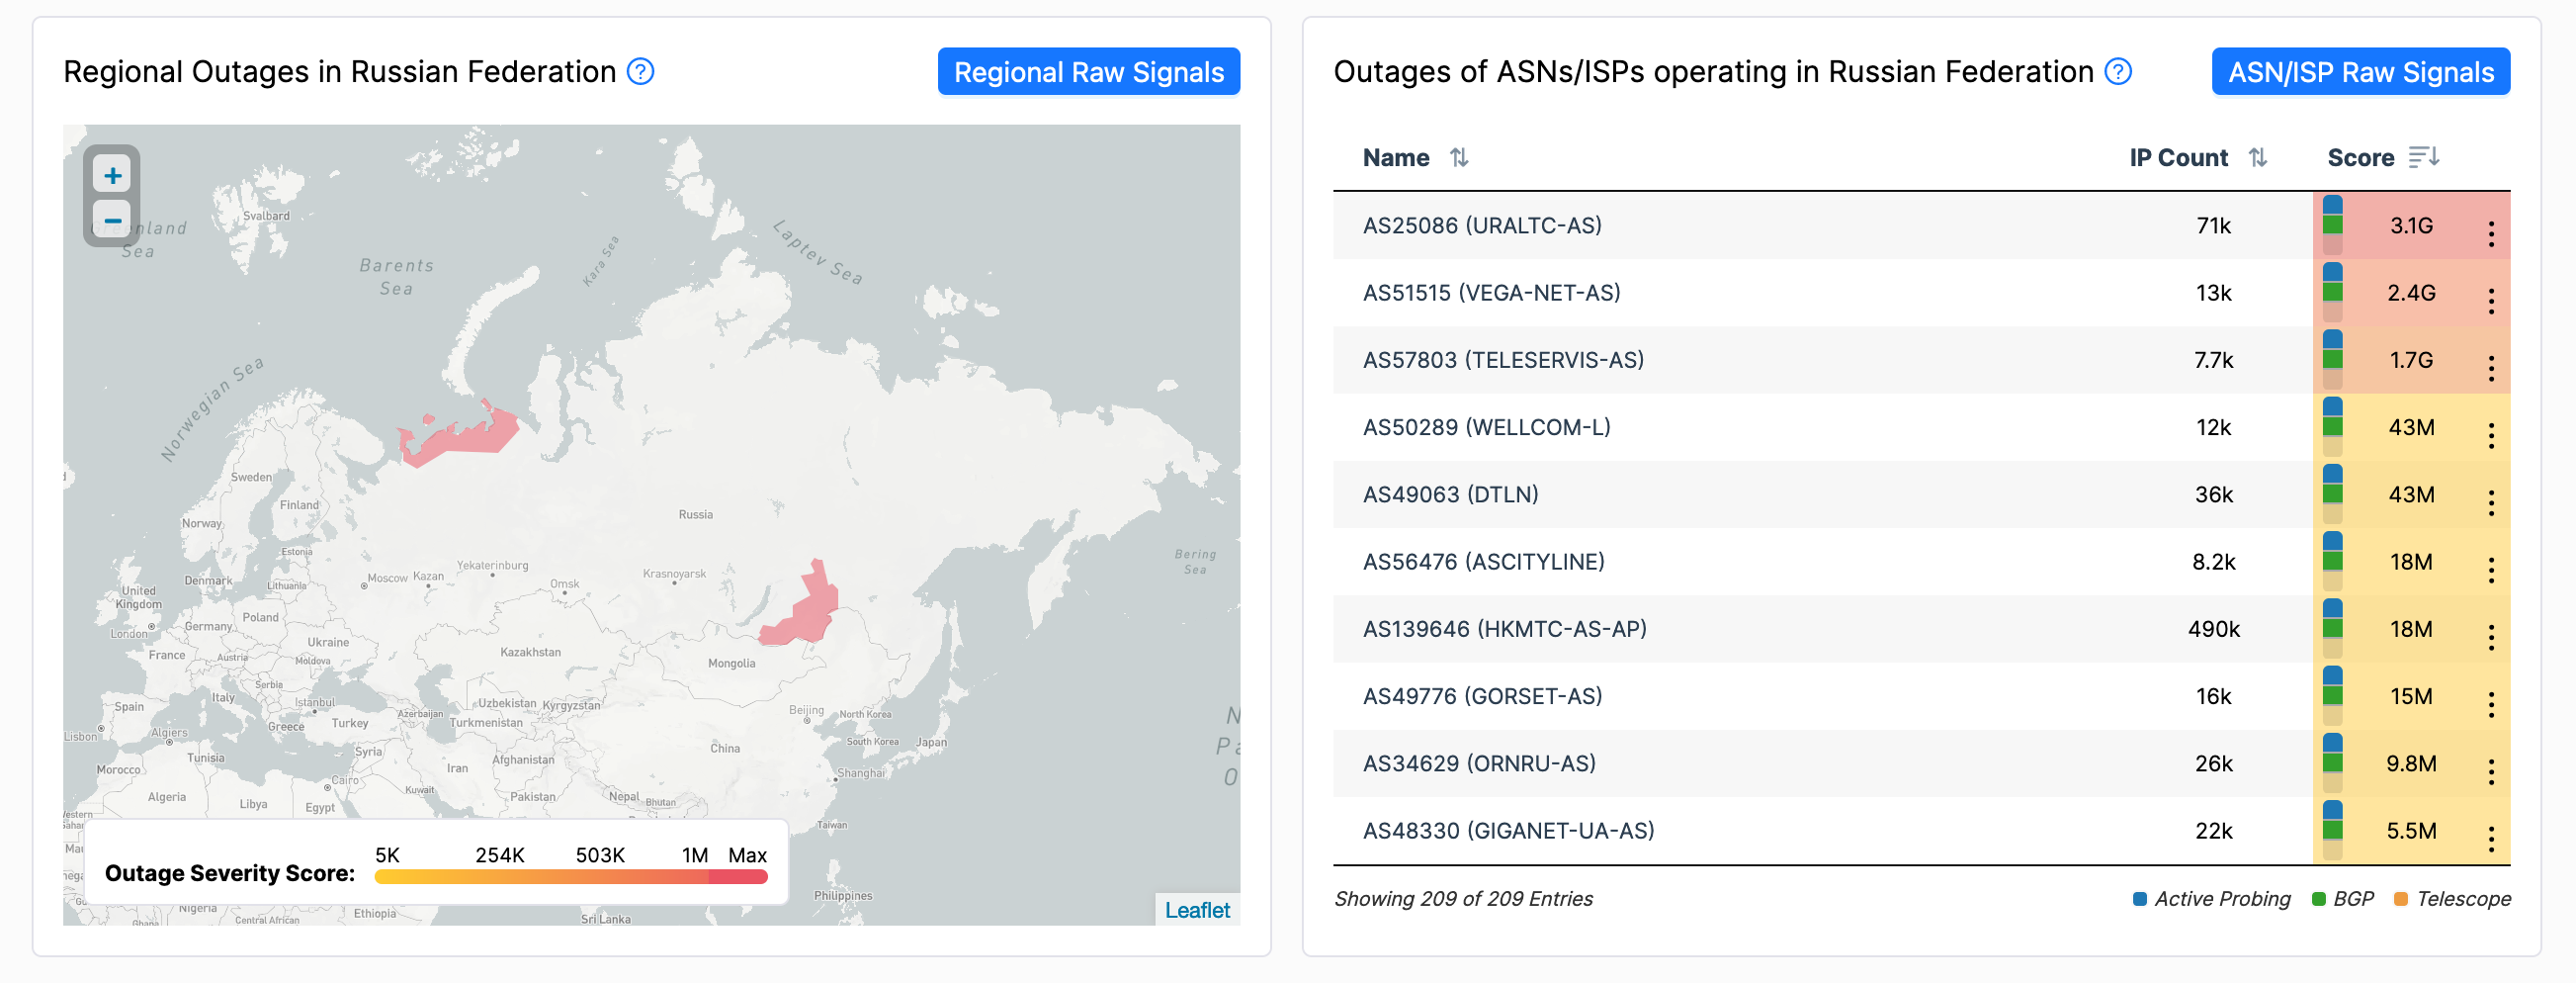 Карта региональных отключений интернета в России по данным IODA. Красным отмечены регионы со сбоями. Справа список автономных систем и провайдеров с количеством IP-адресов.